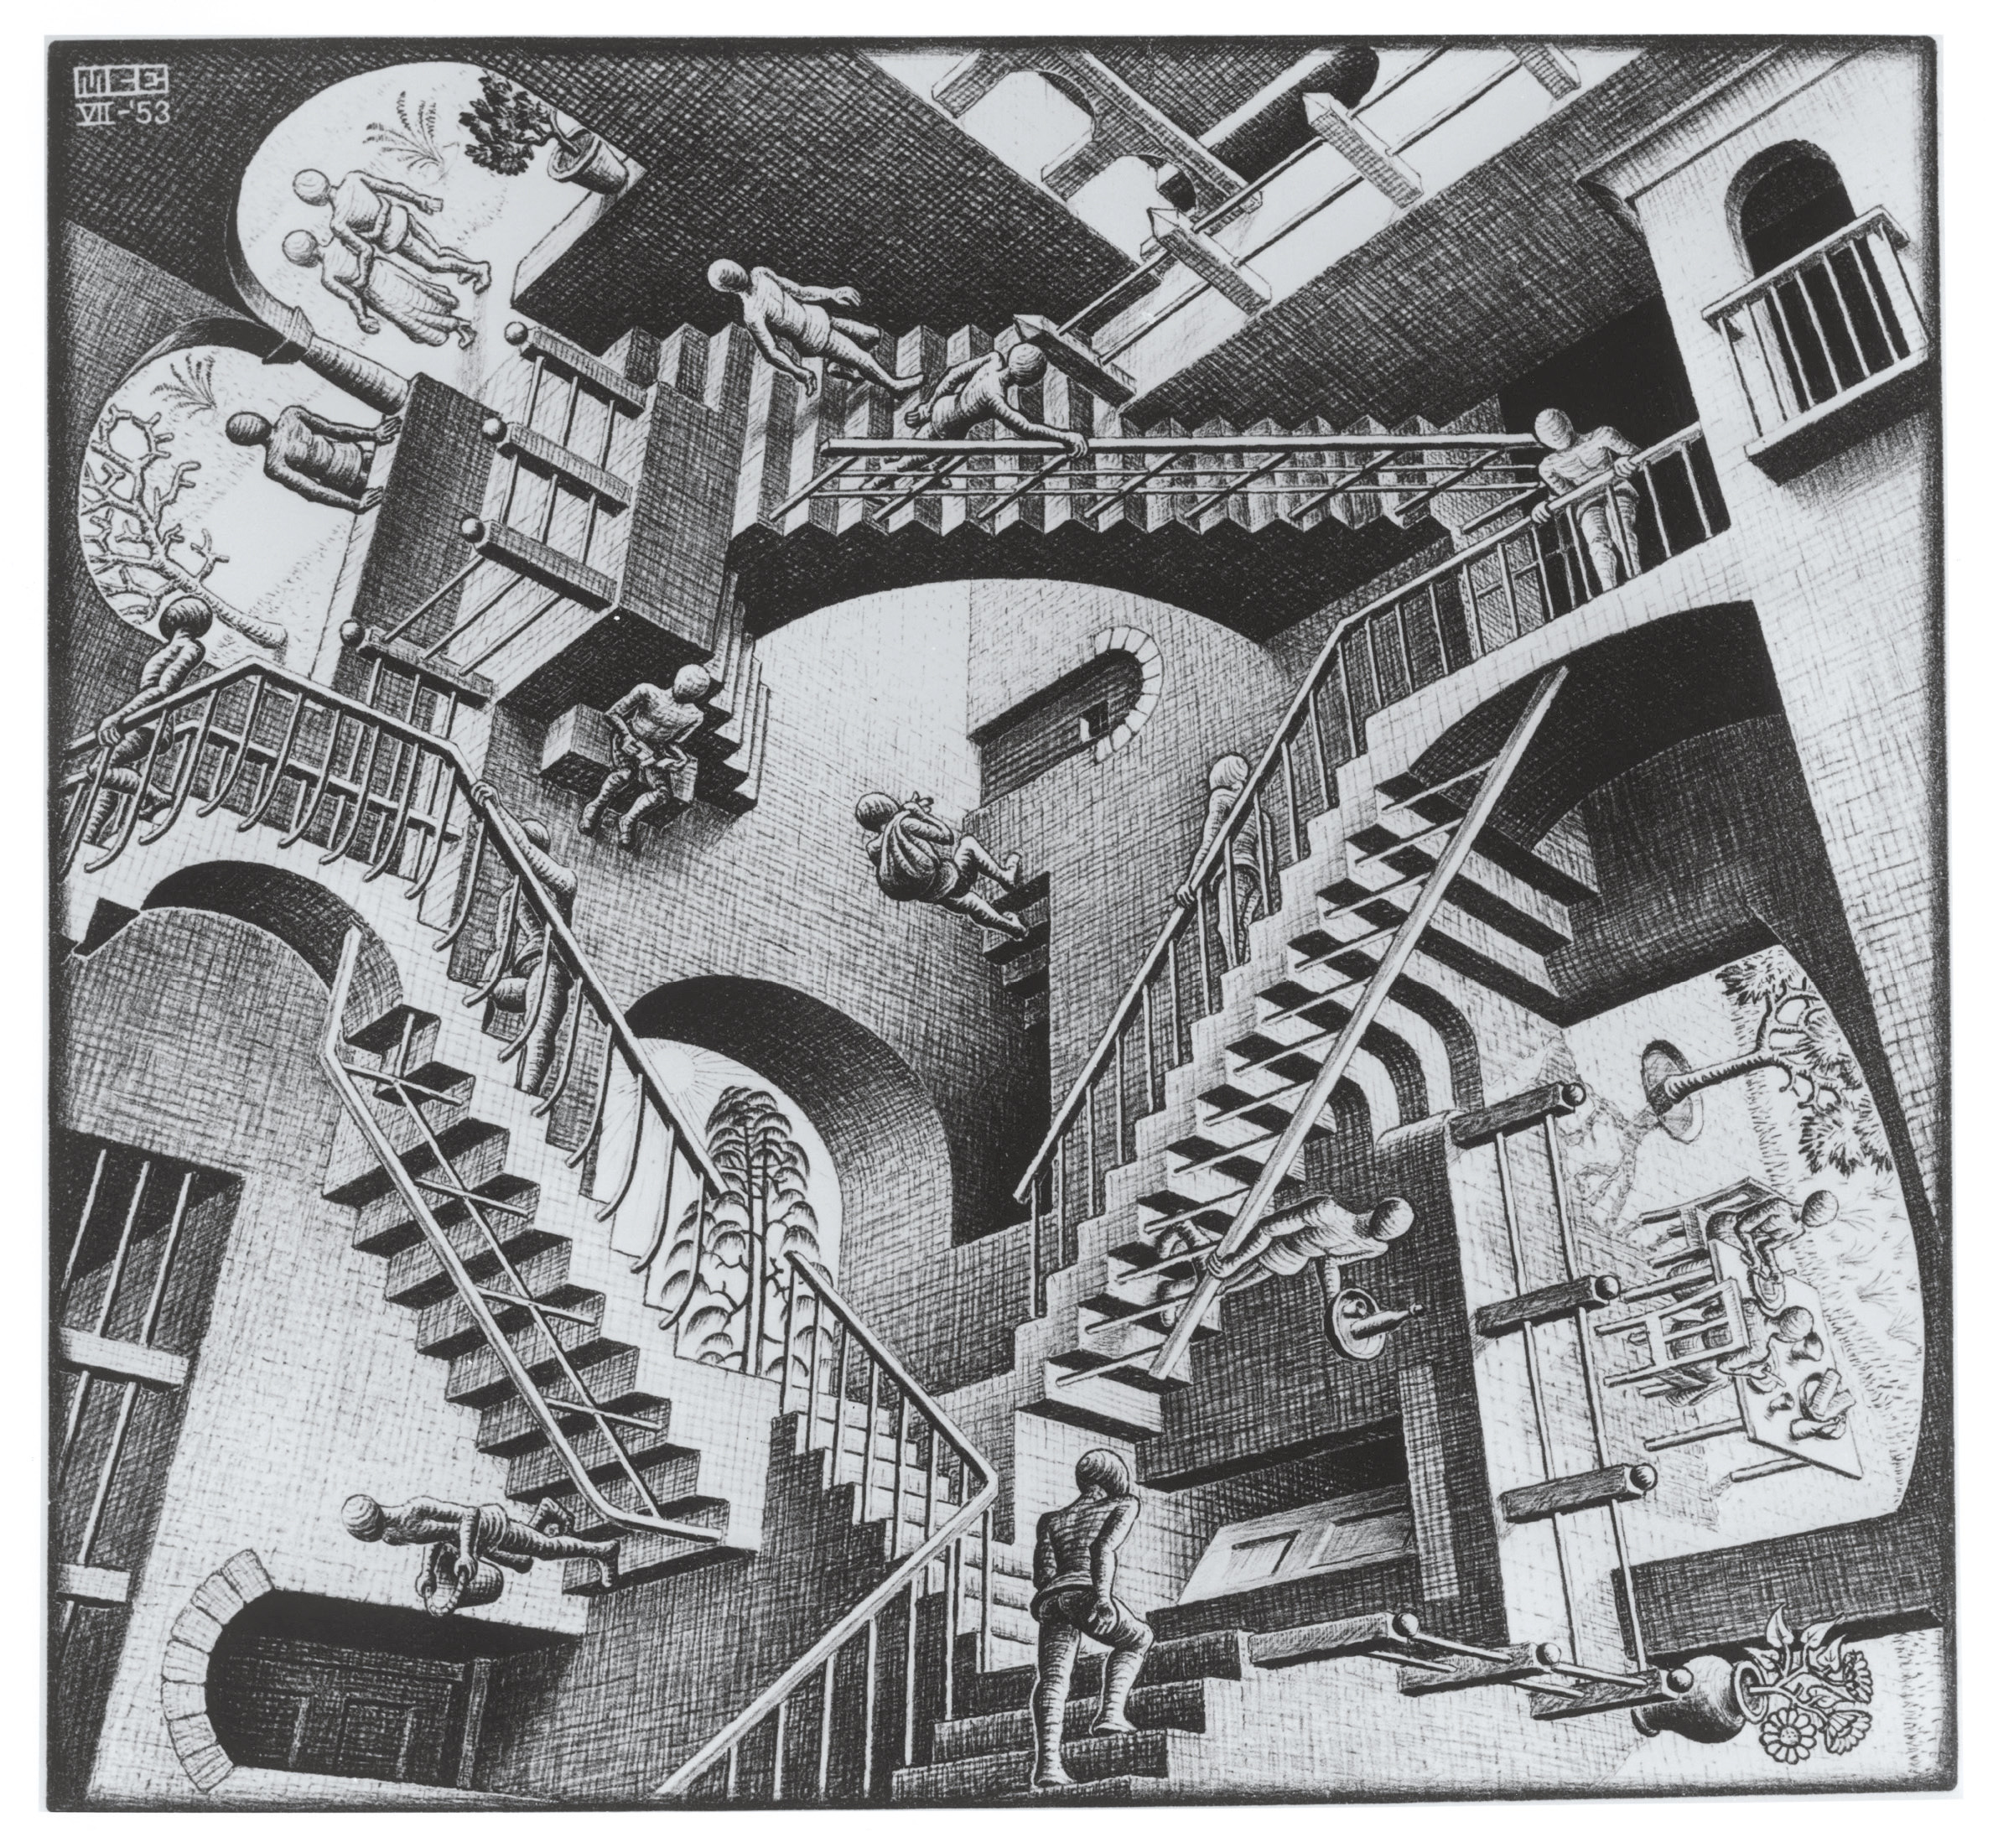 《相対性》 1953年 All M.C. Escher works (C) The M.C. Escher Company, The Netherlands. All rights reserved. www.mcescher.com